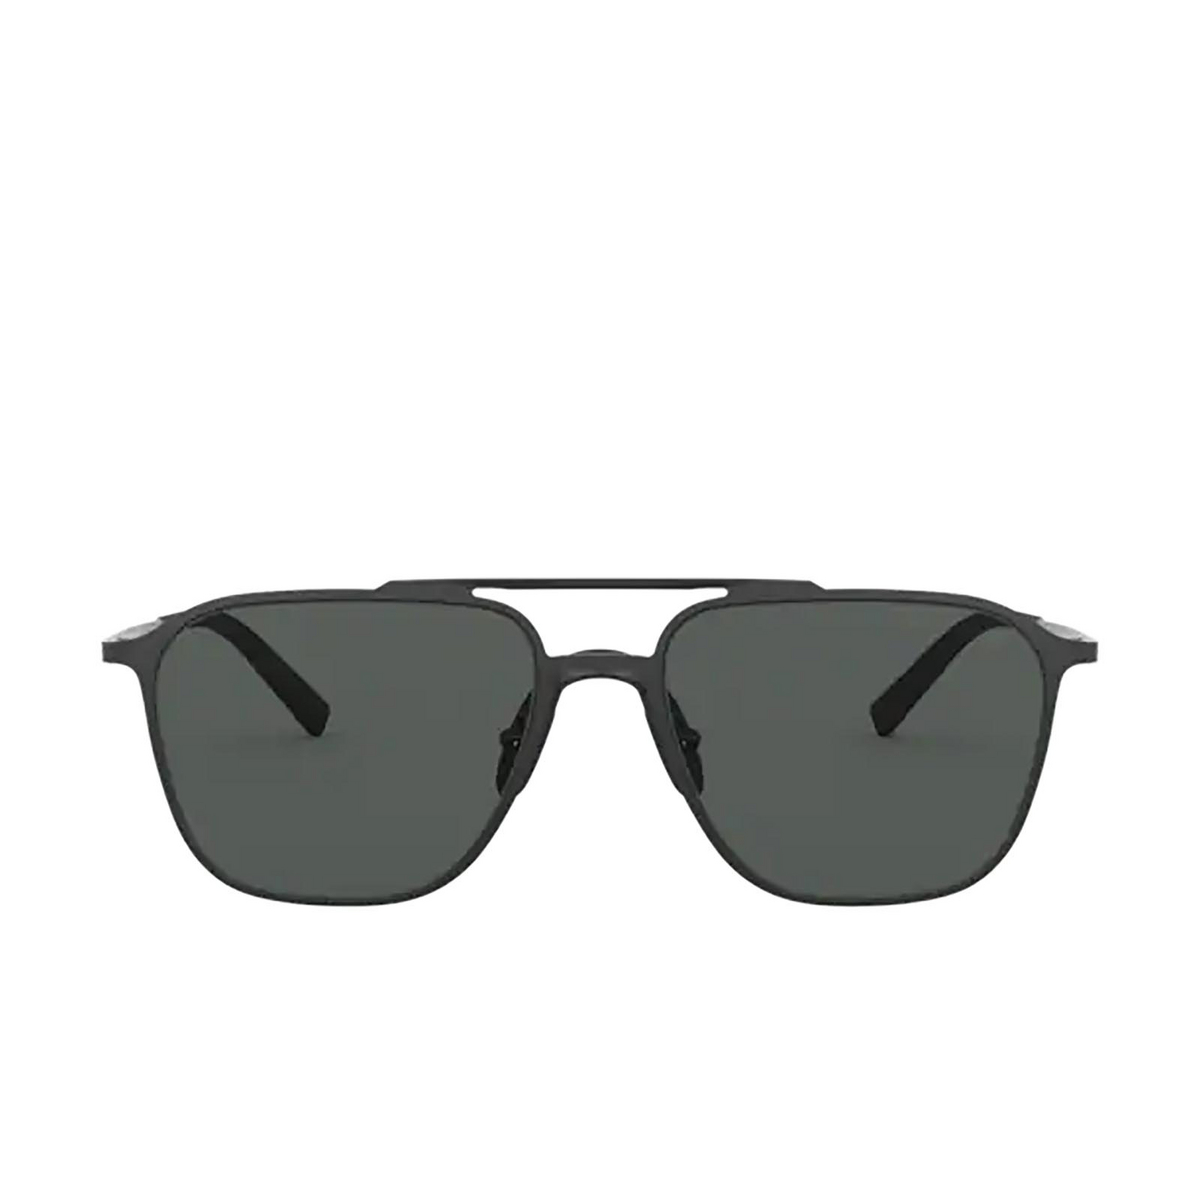 Giorgio Armani AR6110 Sunglasses 300187 MATTE BLACK - front view